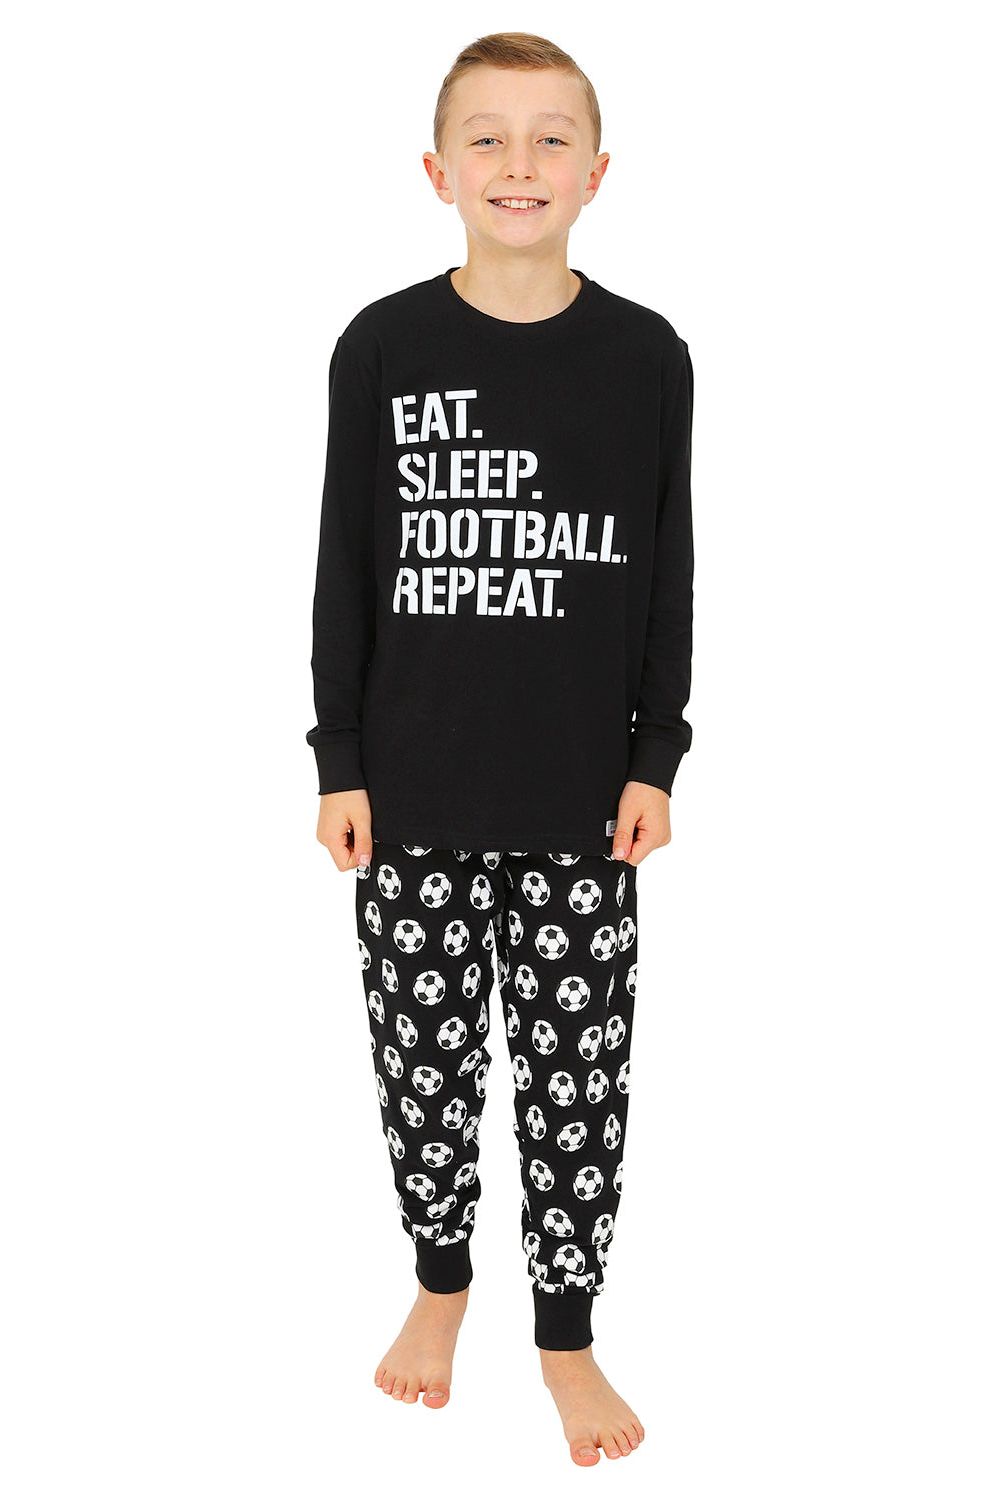 Eat Sleep Football Repeat Long Pyjamas